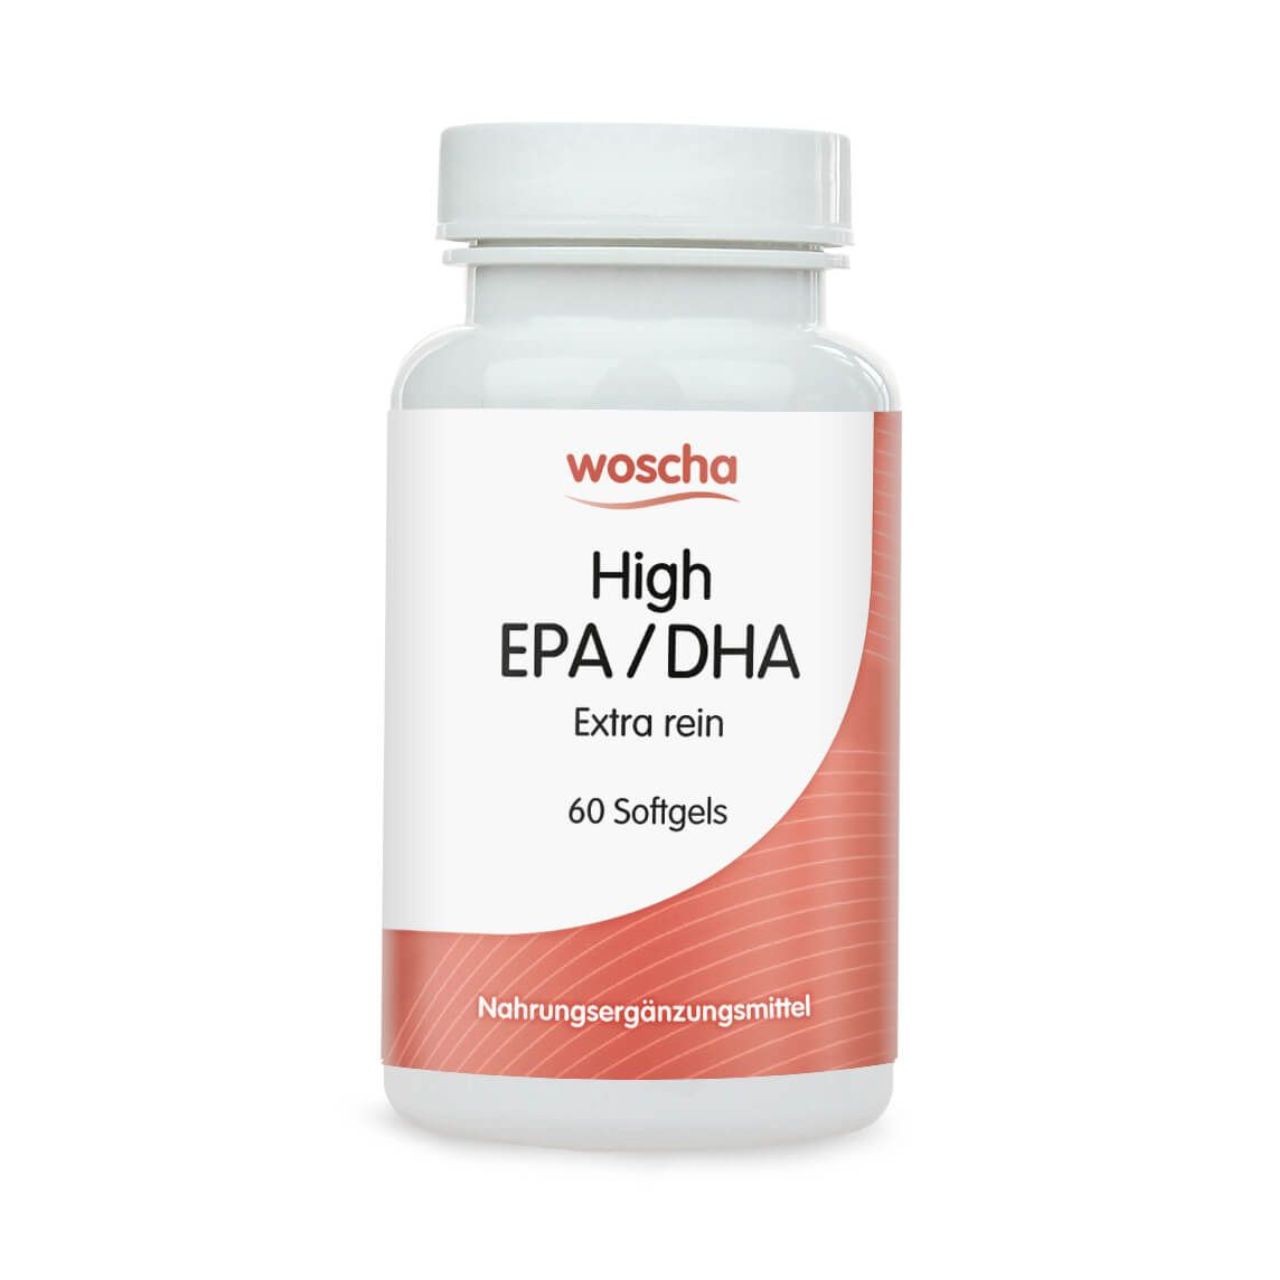 High EPA/DHA, 60 Softgels